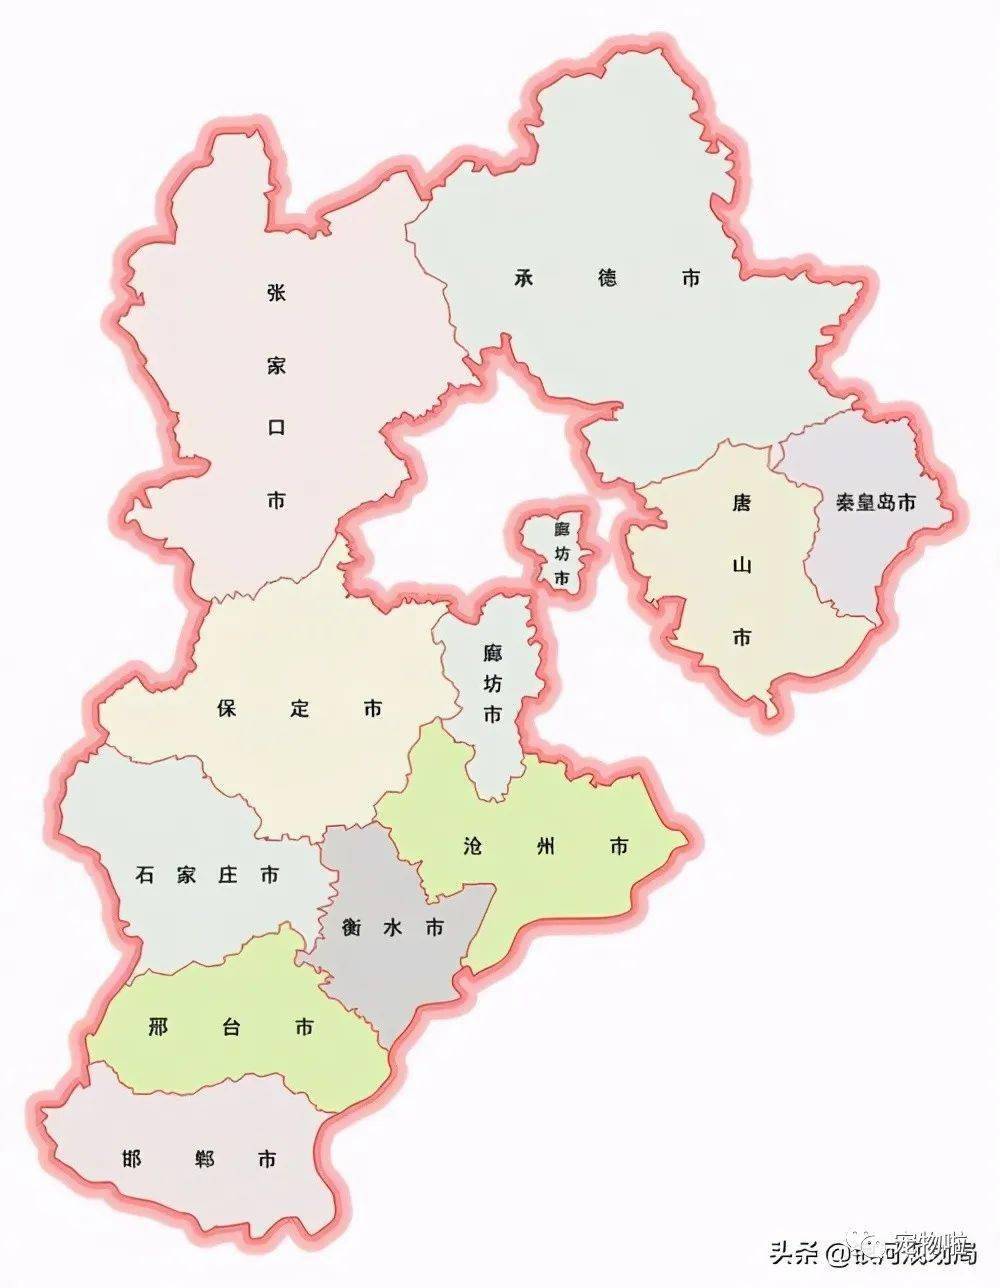 河北行政区域调整设想打造三大板块争取做北方的广东